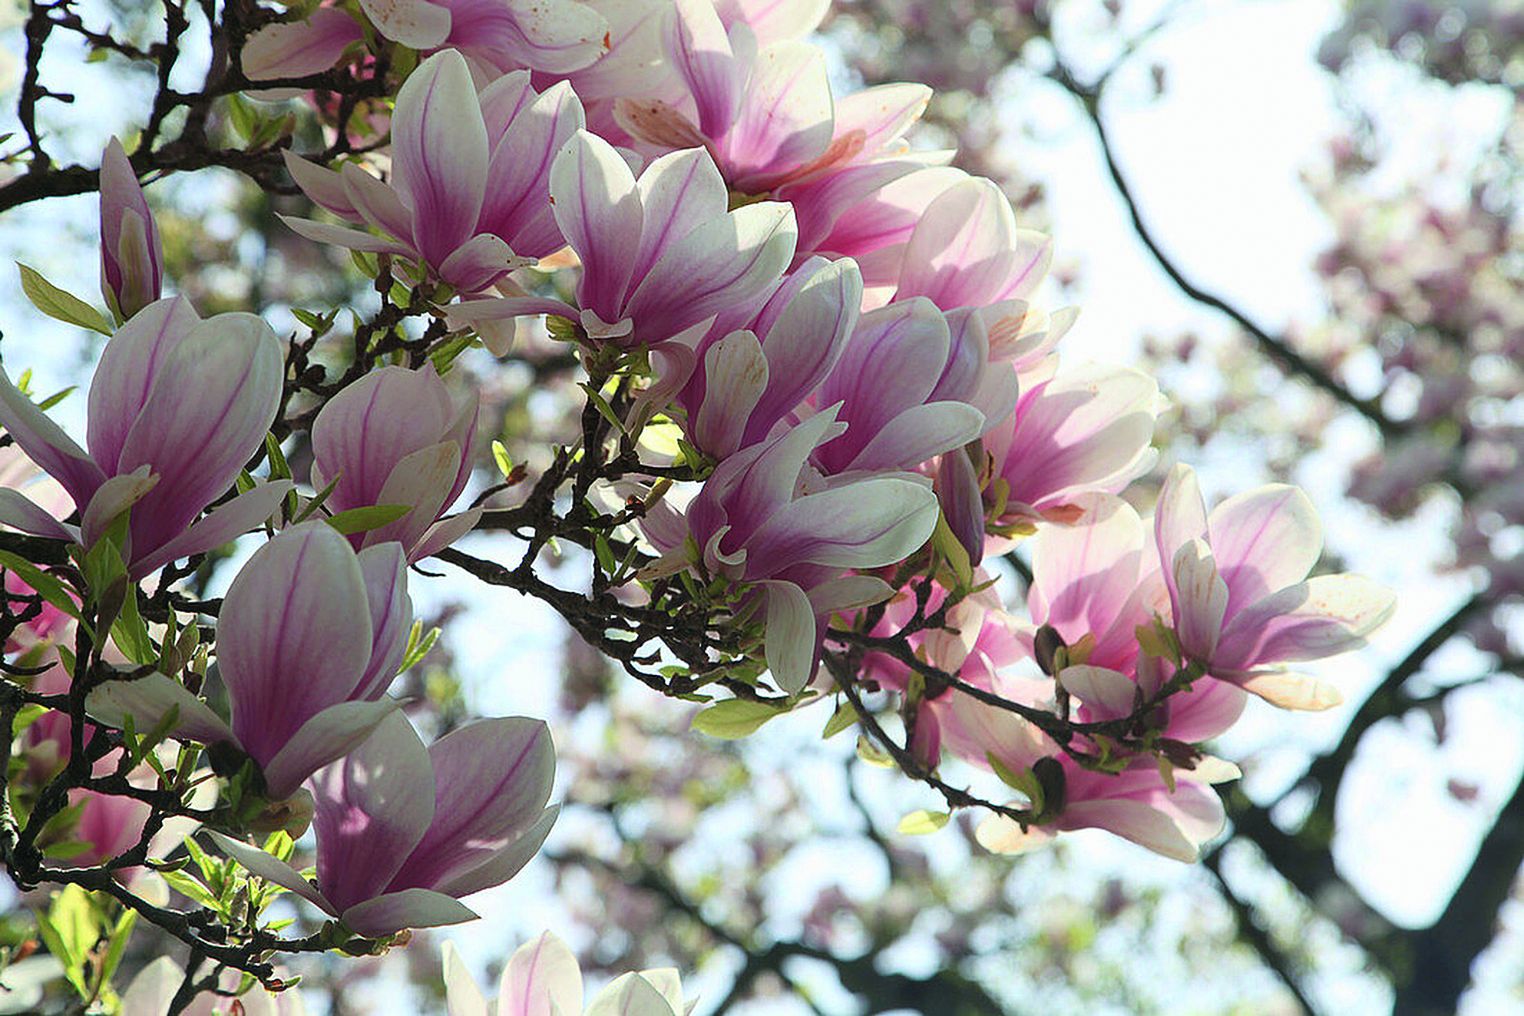 razmnožavanje magnolije